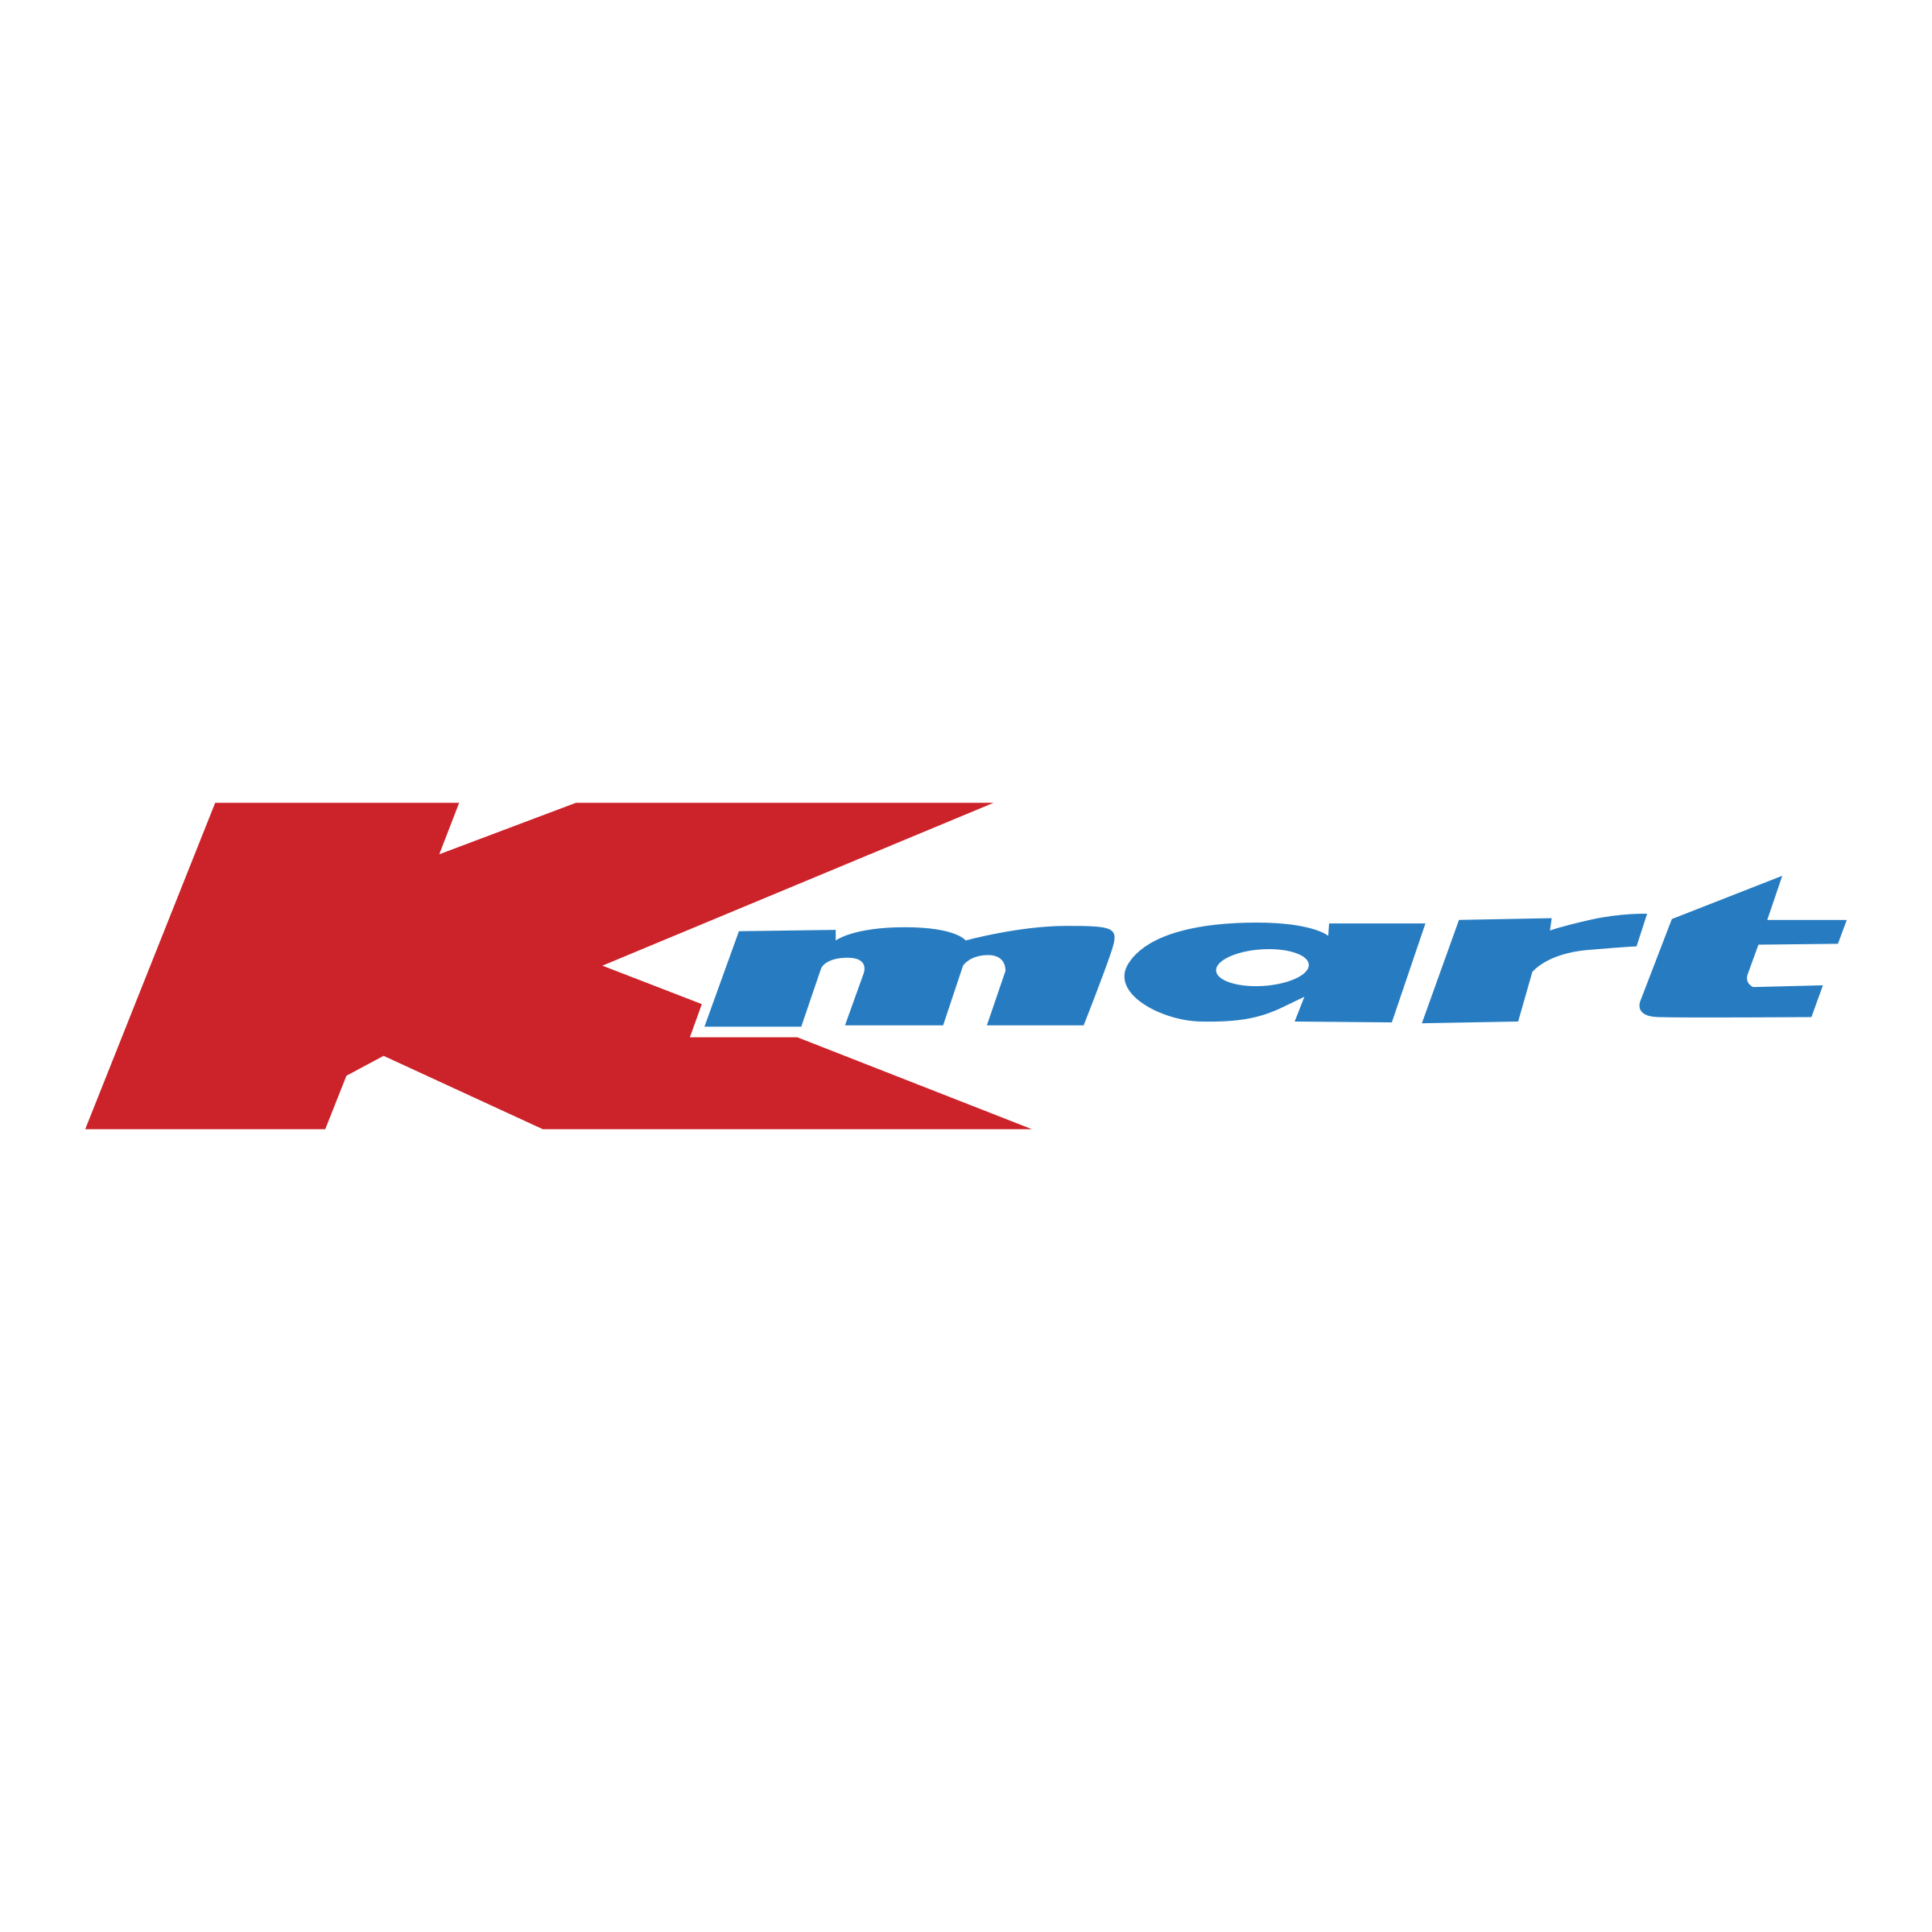 Kmart Logo - Kmart Logo PNG Transparent & SVG Vector